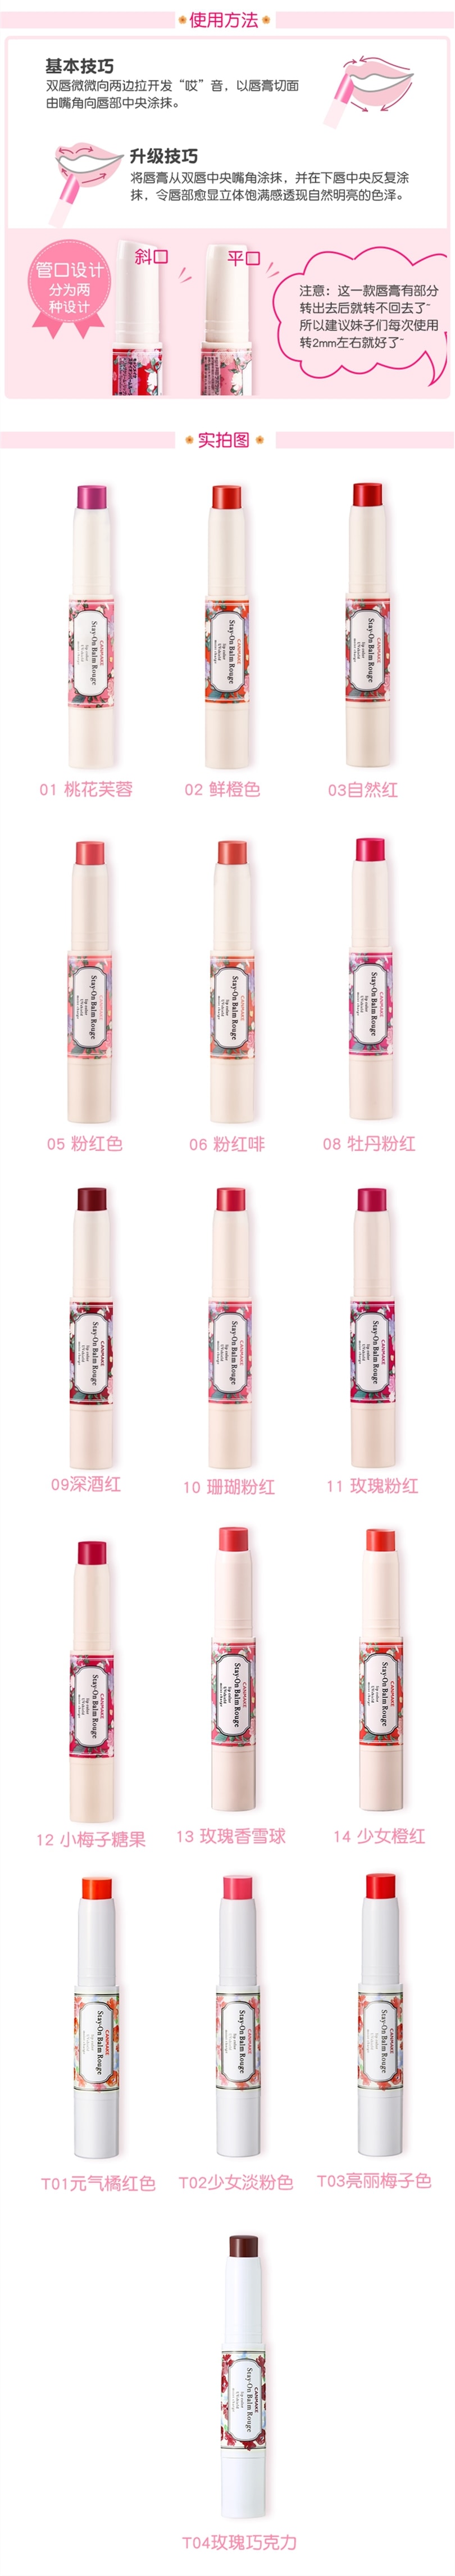 【日本直邮】日本CANMAKE 高保湿防晒持久滋润唇膏 #08 牡丹粉红 绝版颜色 数量有限